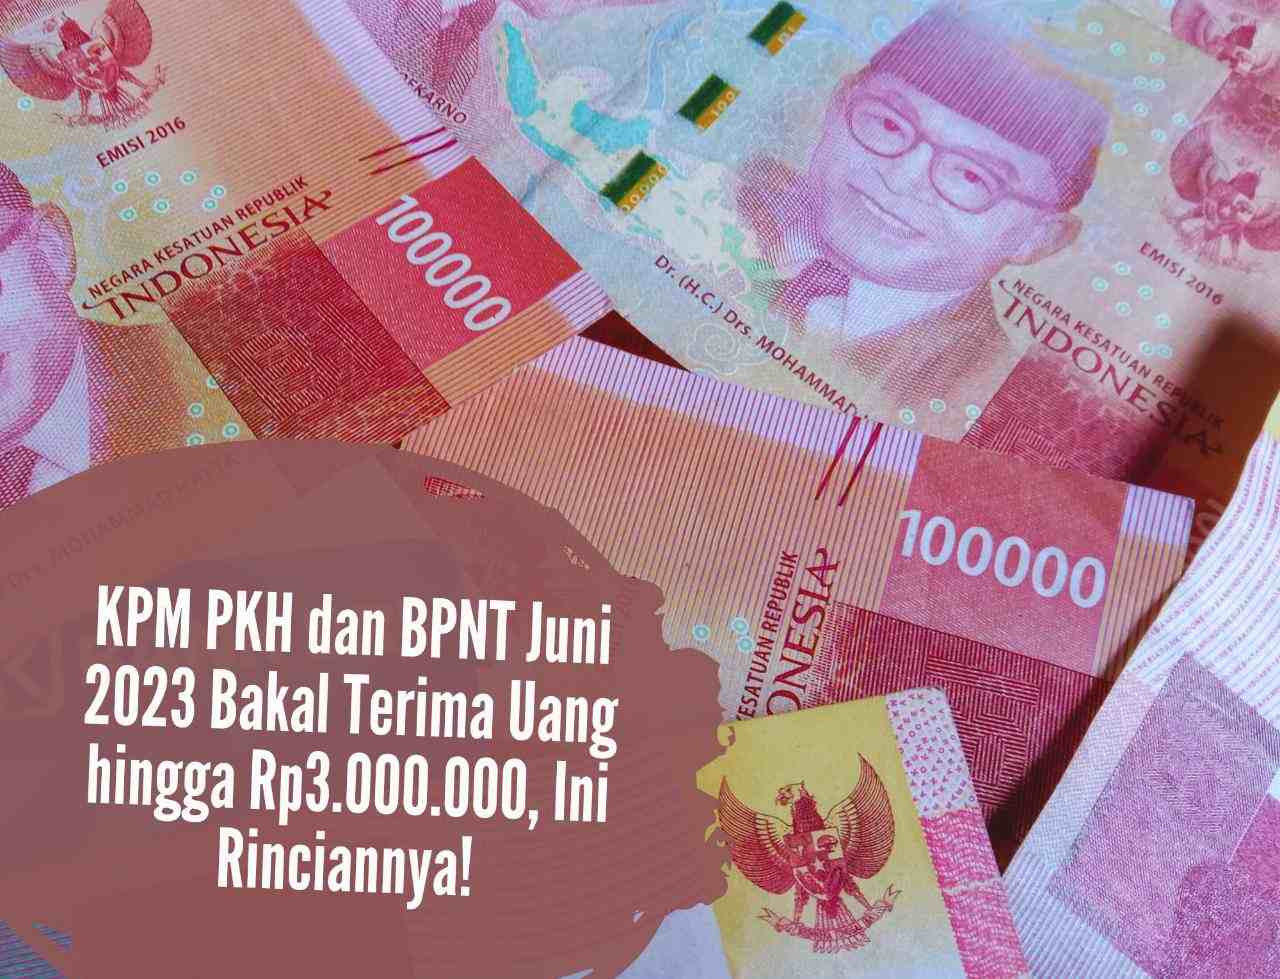 Alhamdulillah Cair Lagi! KPM PKH dan BPNT Juni 2023 Bakal Terima Uang hingga Rp3.000.000, Ini Rinciannya